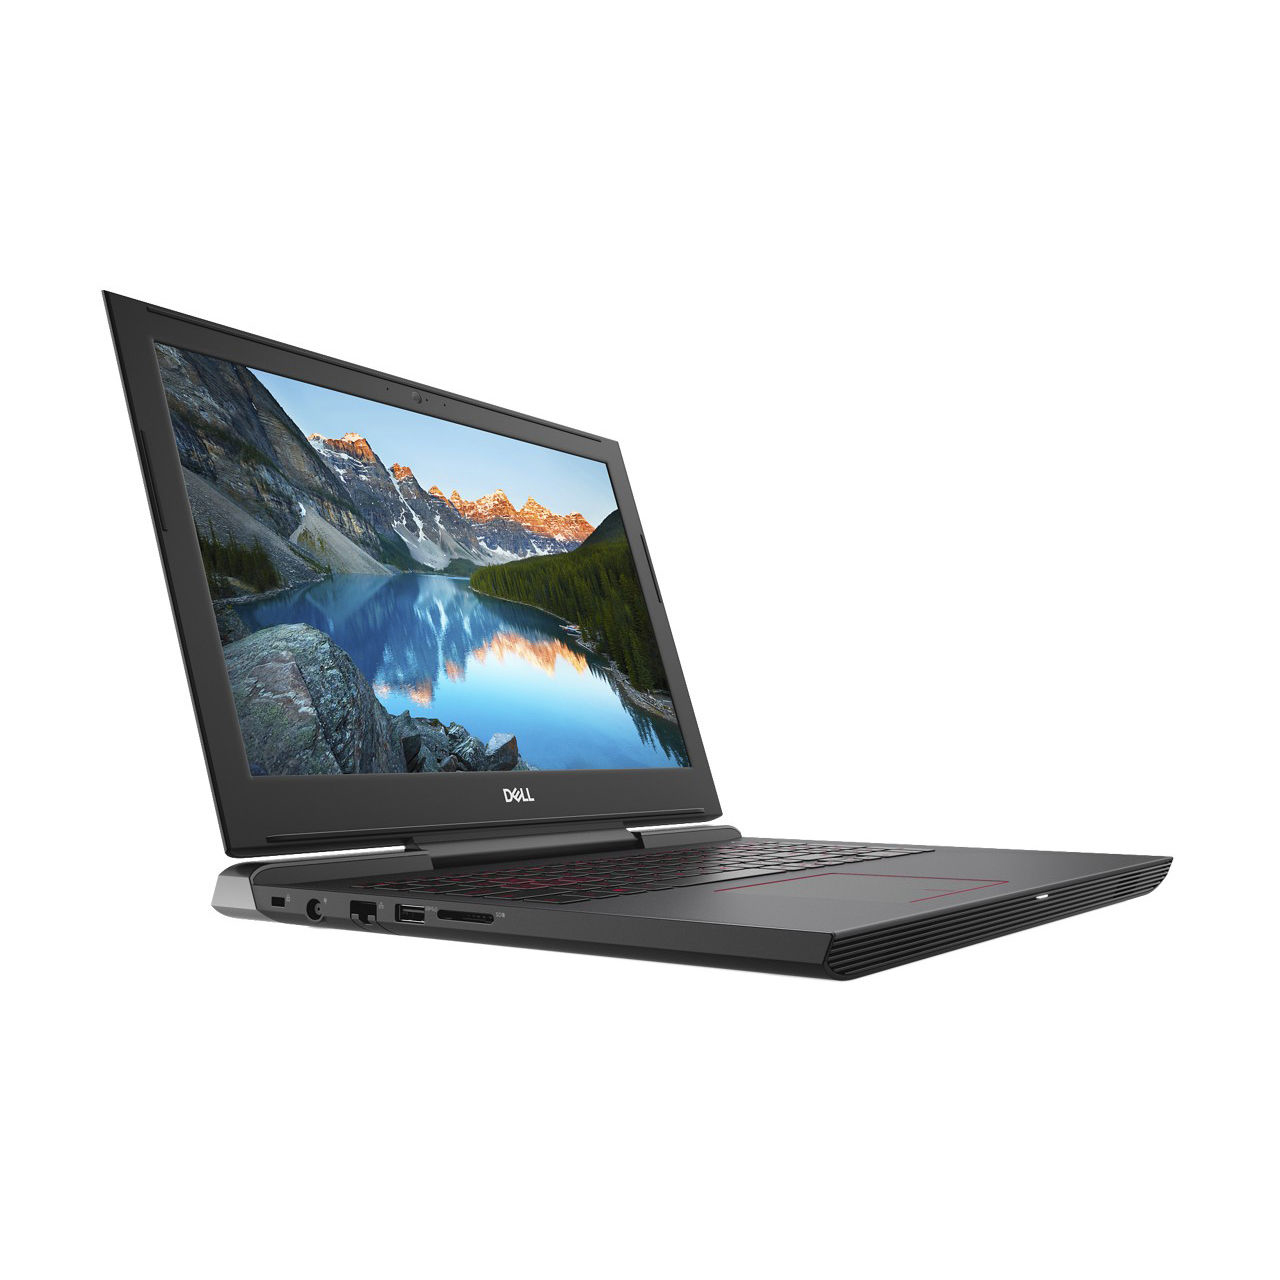 Nâng cấp SSD, RAM cho Laptop Dell Inspiron 15 7577-N7577A - Tuanphong.vn